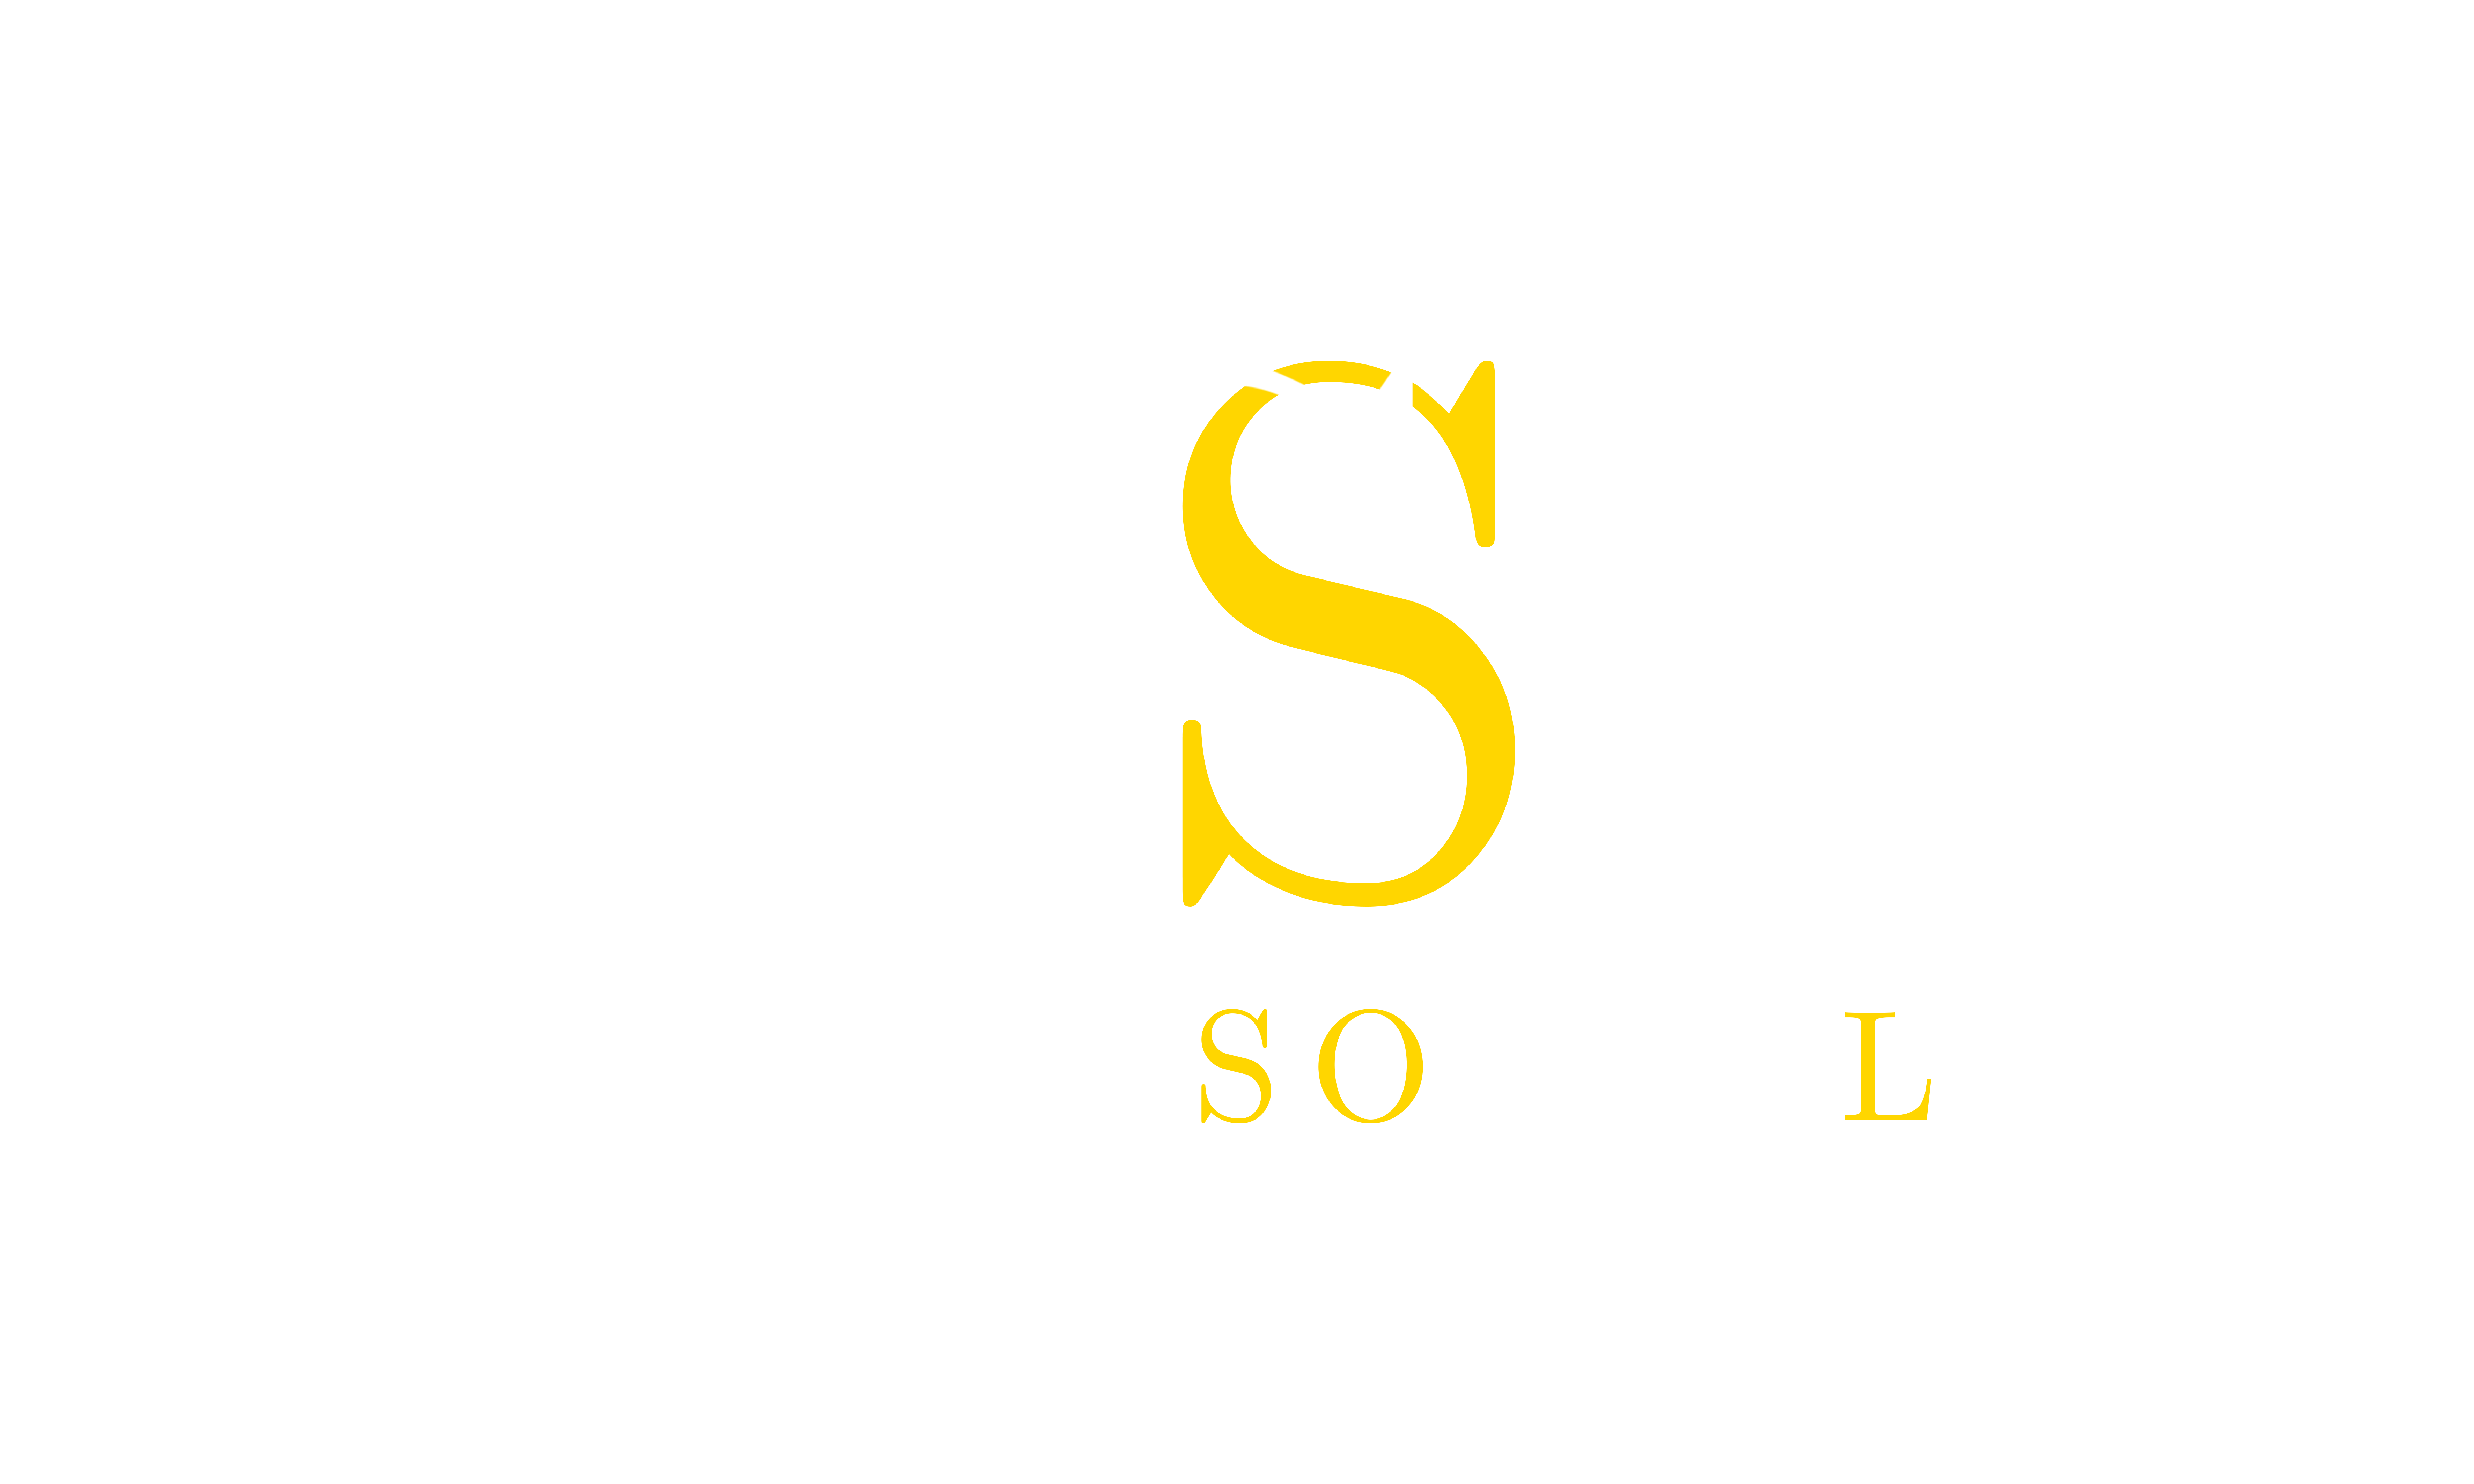 COSTA SOCIALS